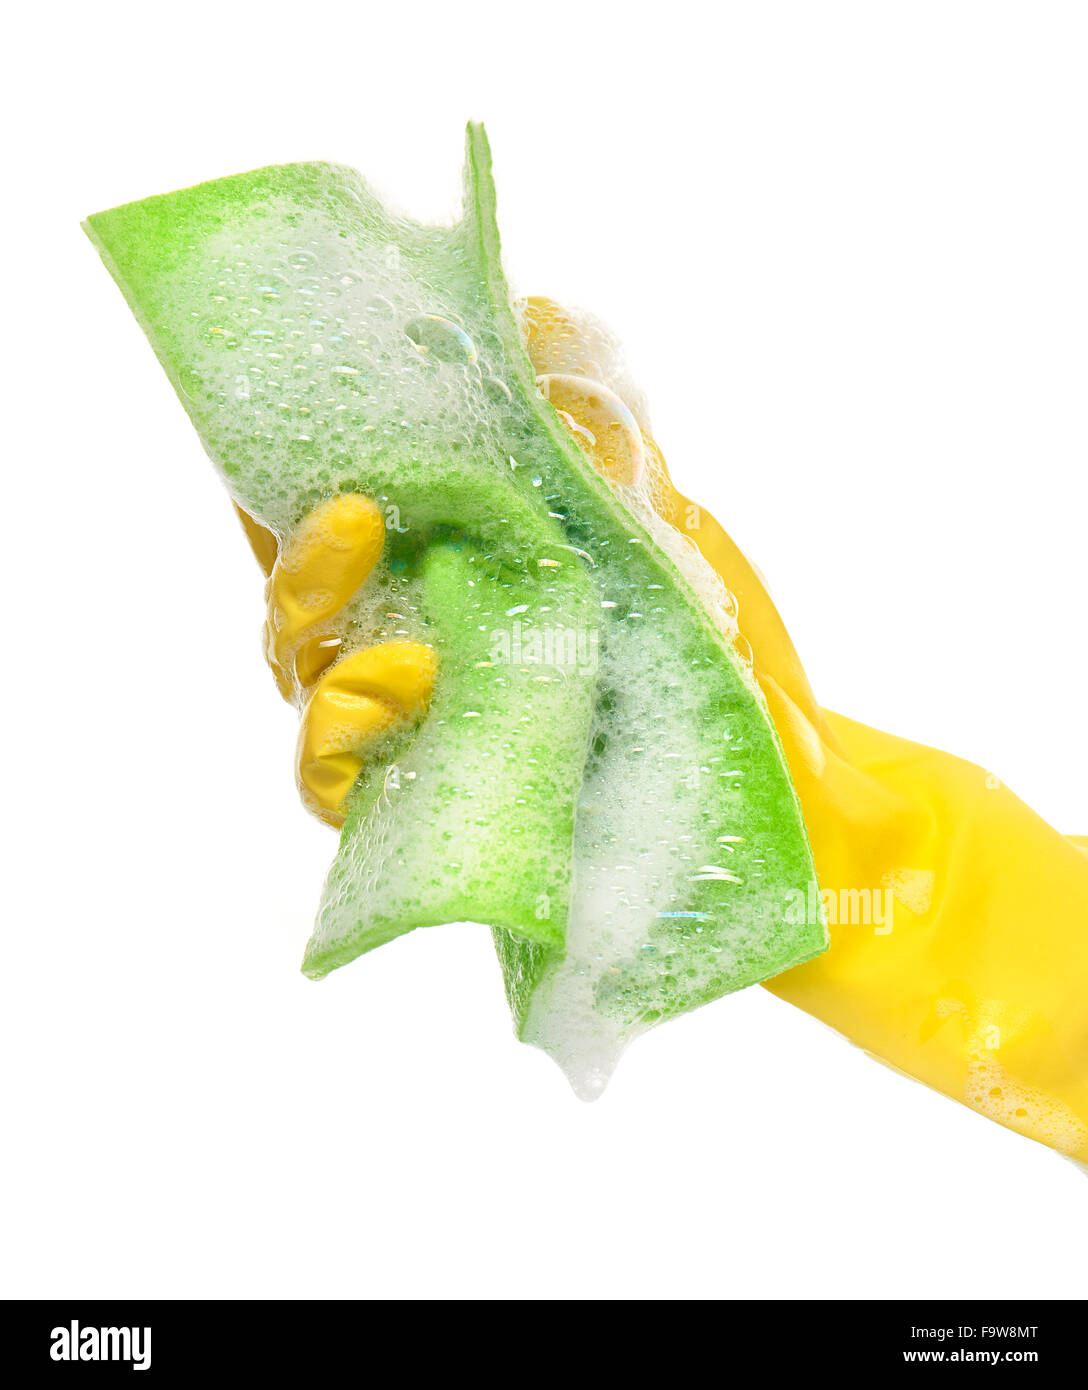 Nahaufnahme eines weiblichen Hand in gelben schützende Gummihandschuh hält grünes Tuch in Schaum vor weißem Hintergrund Stockfoto